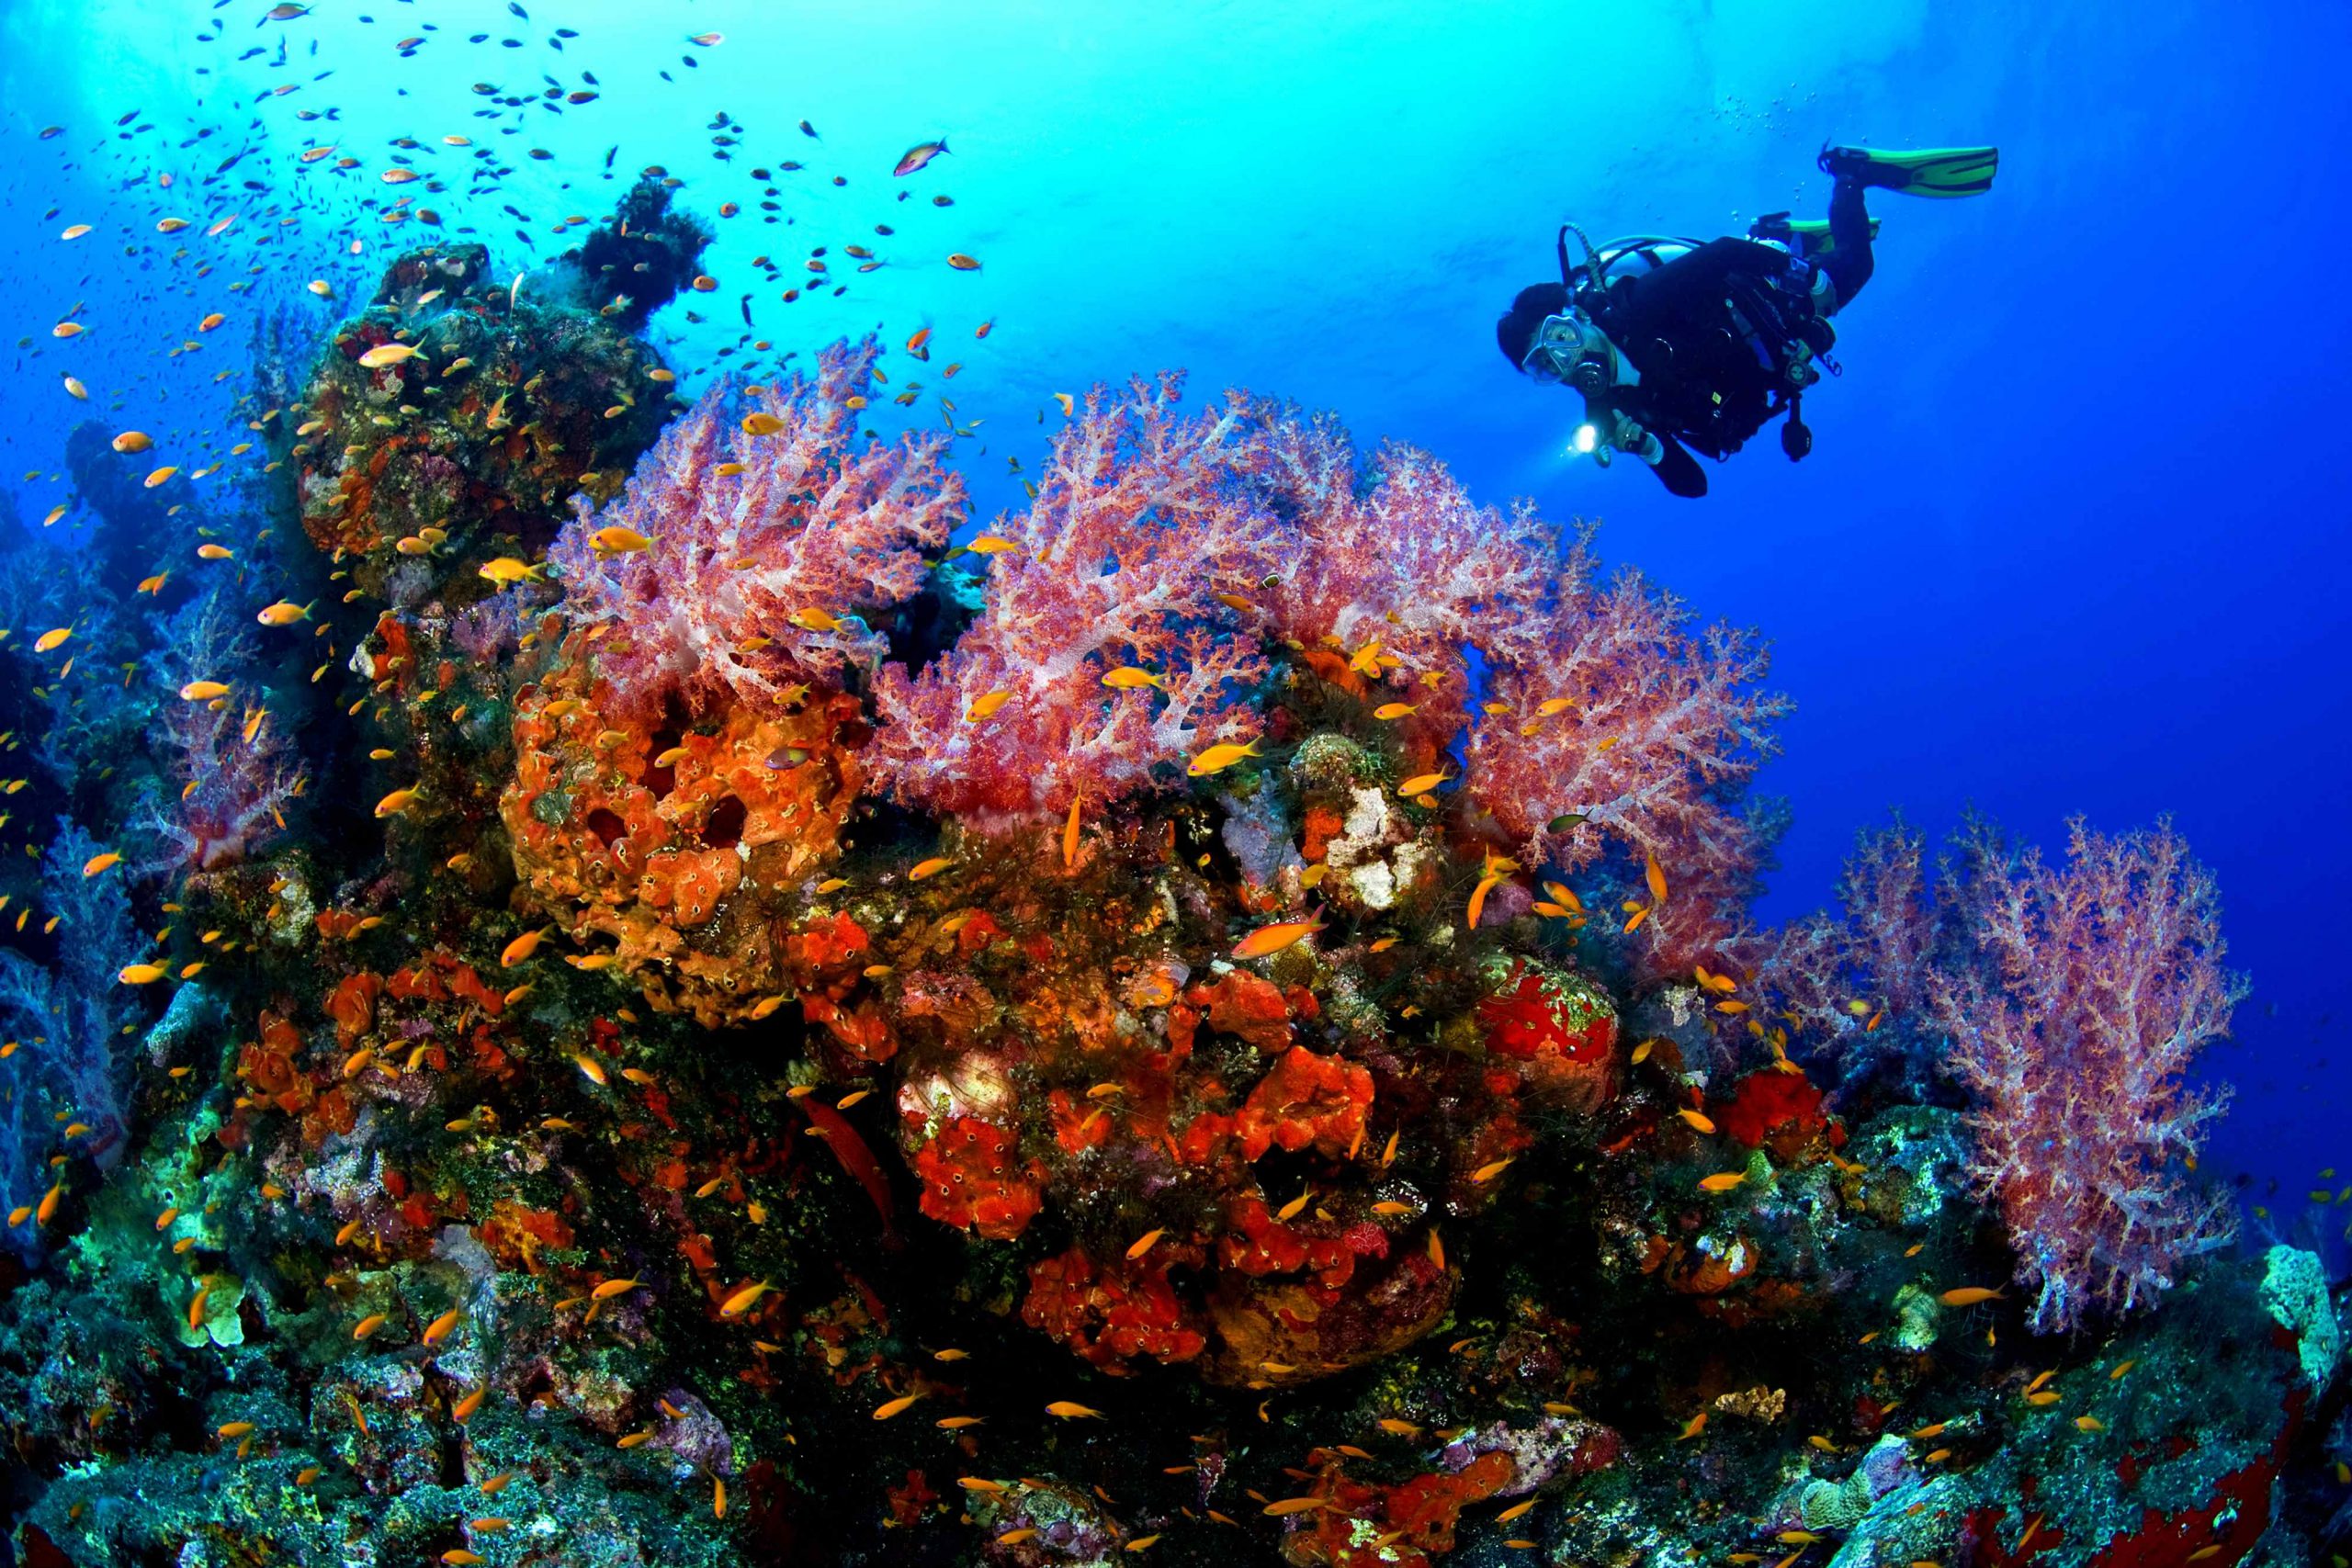 غواصی در آب های صباح در کنار گونه های زیستی و آبی مرجانها و ماهی های جزیره صباح مالزی